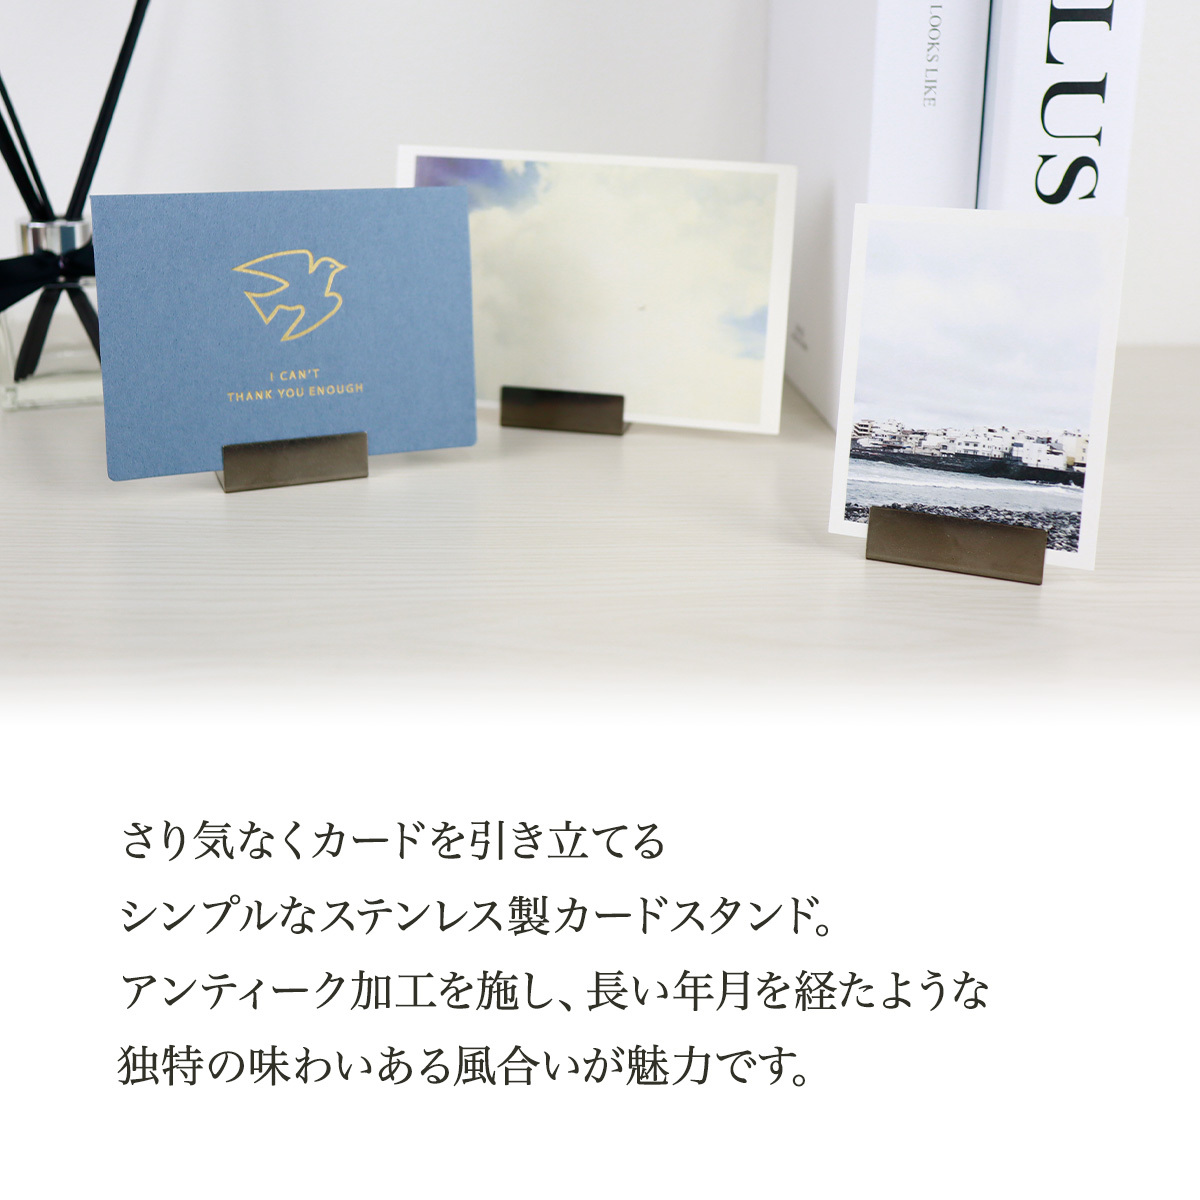 市場 ステンレス アンティーク調 カードスタンド 日本製 シルバー ワイドサイズ プライスカード 個入り カードホルダー